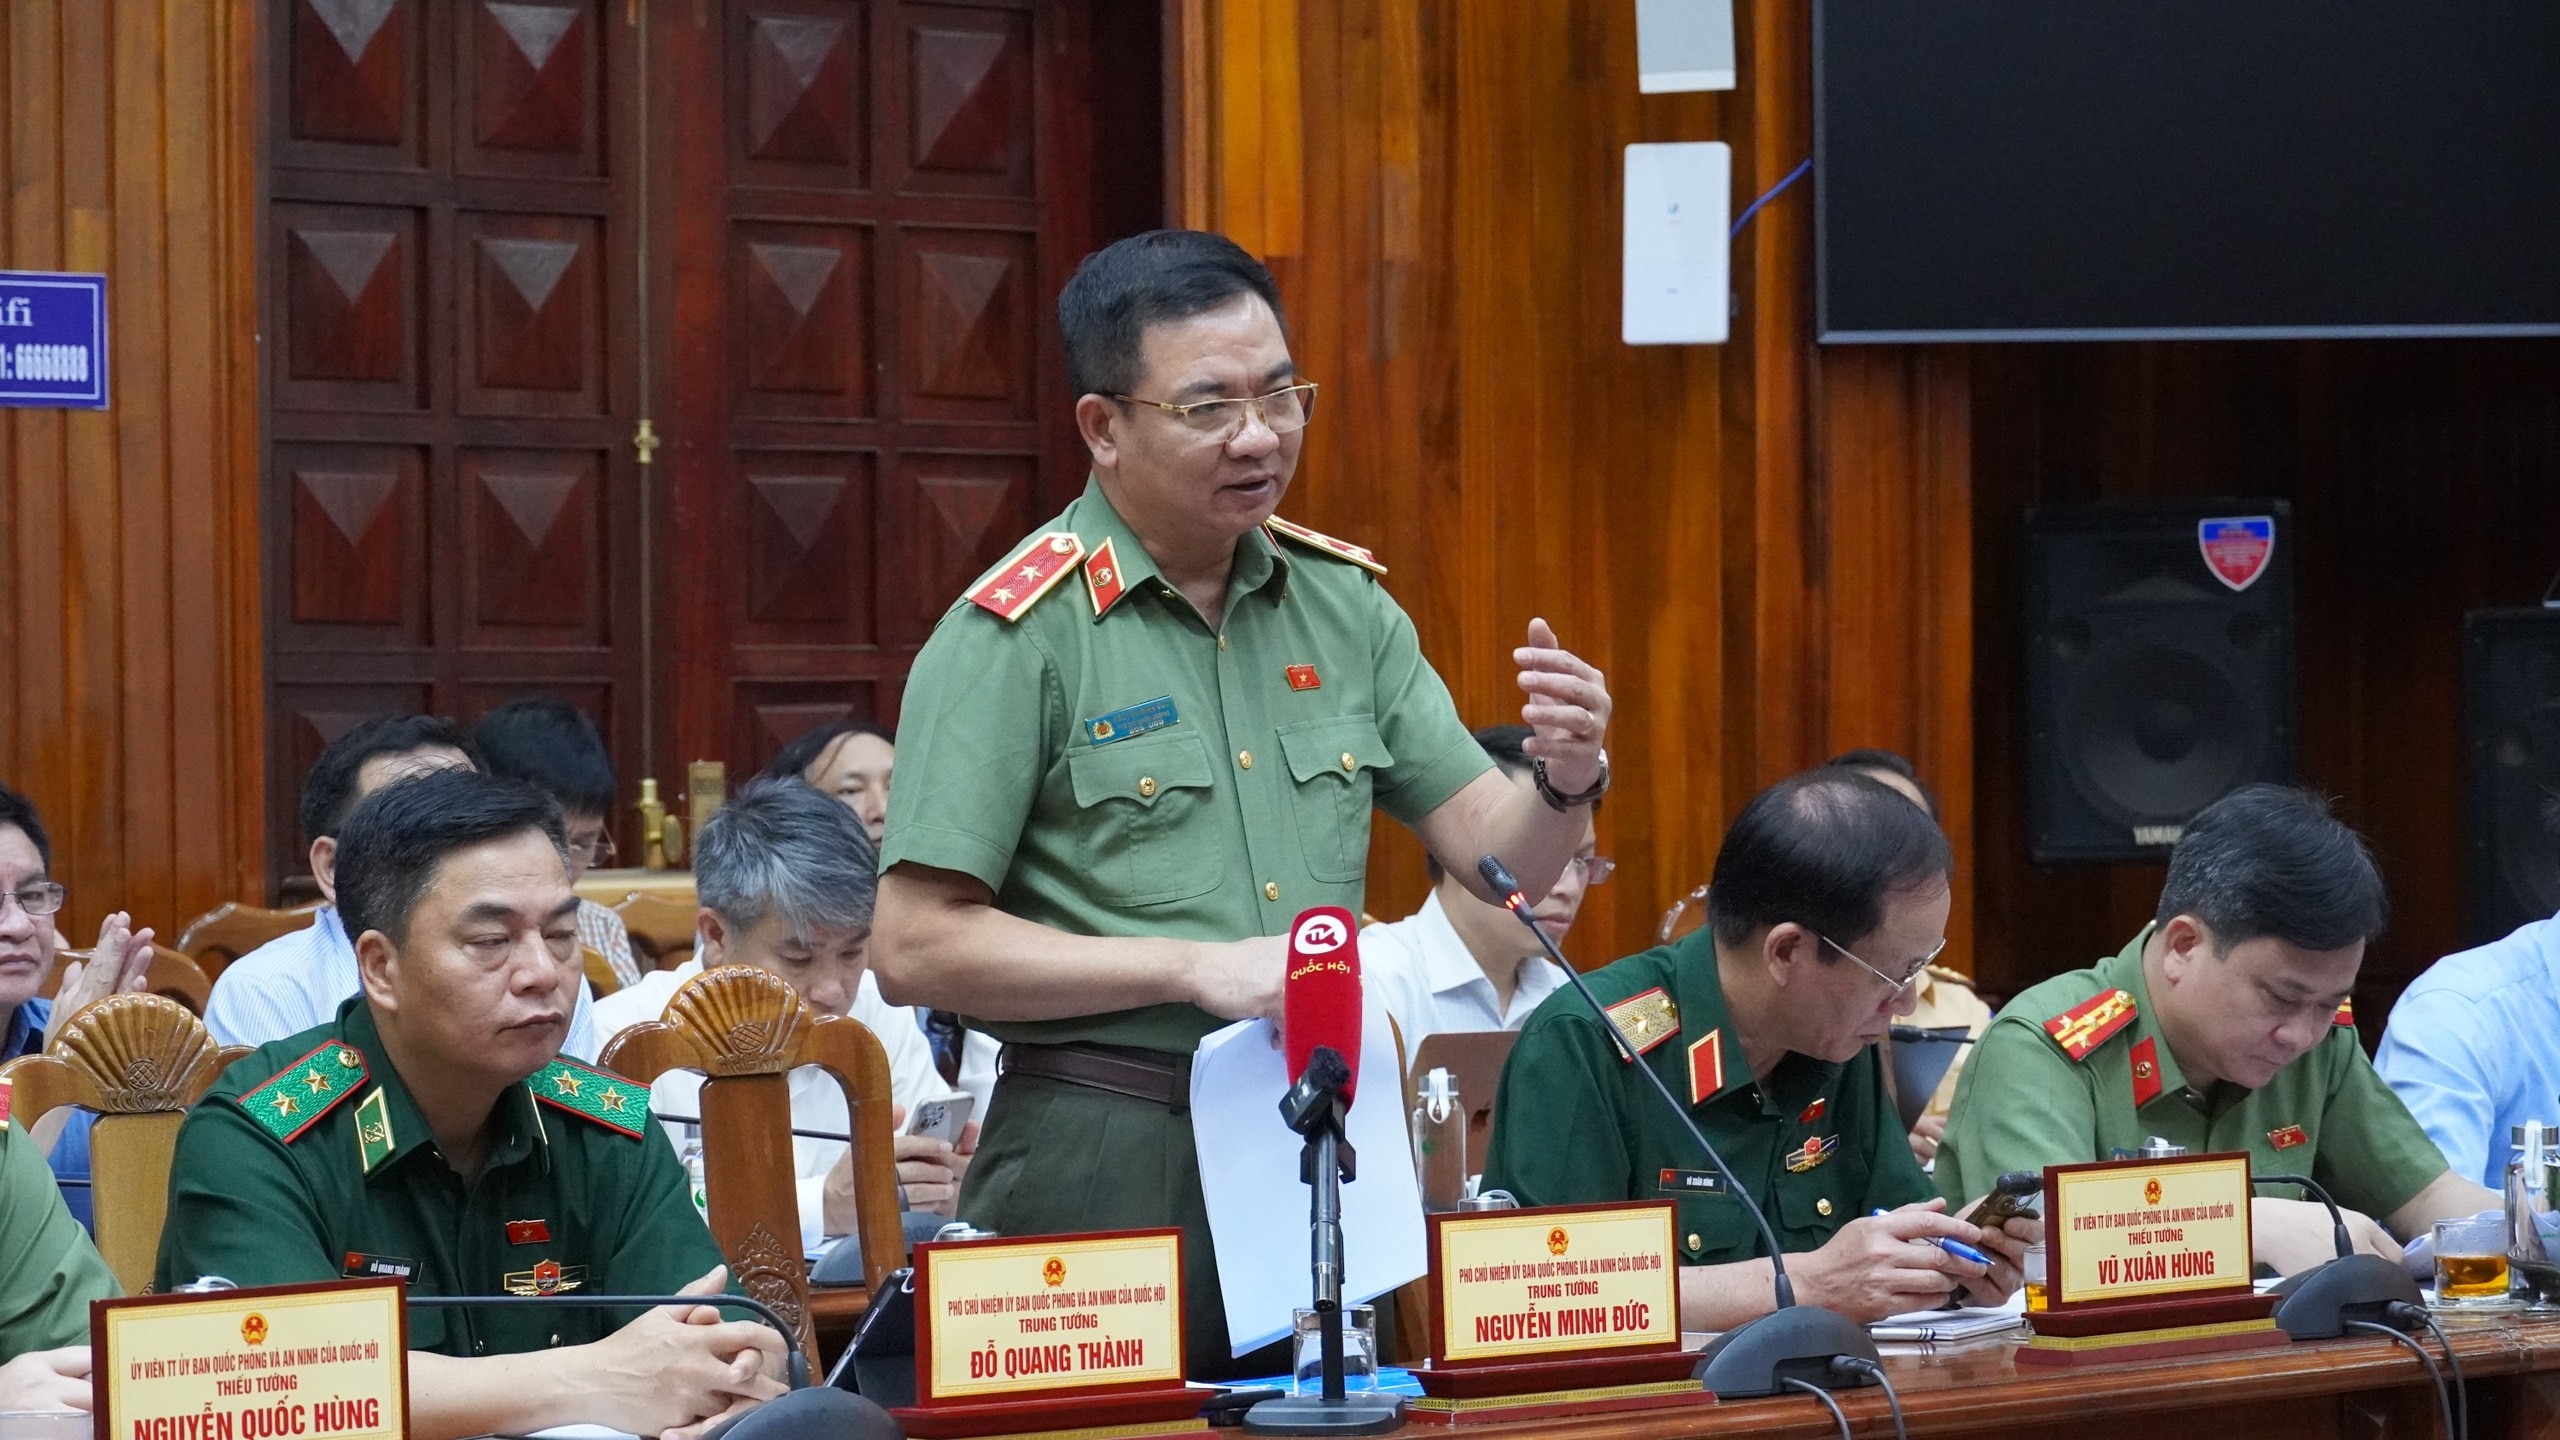 Phó Chủ nhiệm Ủy ban, Trung tướng Nguyễn Minh Đức phát biểu tại buổi làm việc. Ảnh: Khánh Trinh 